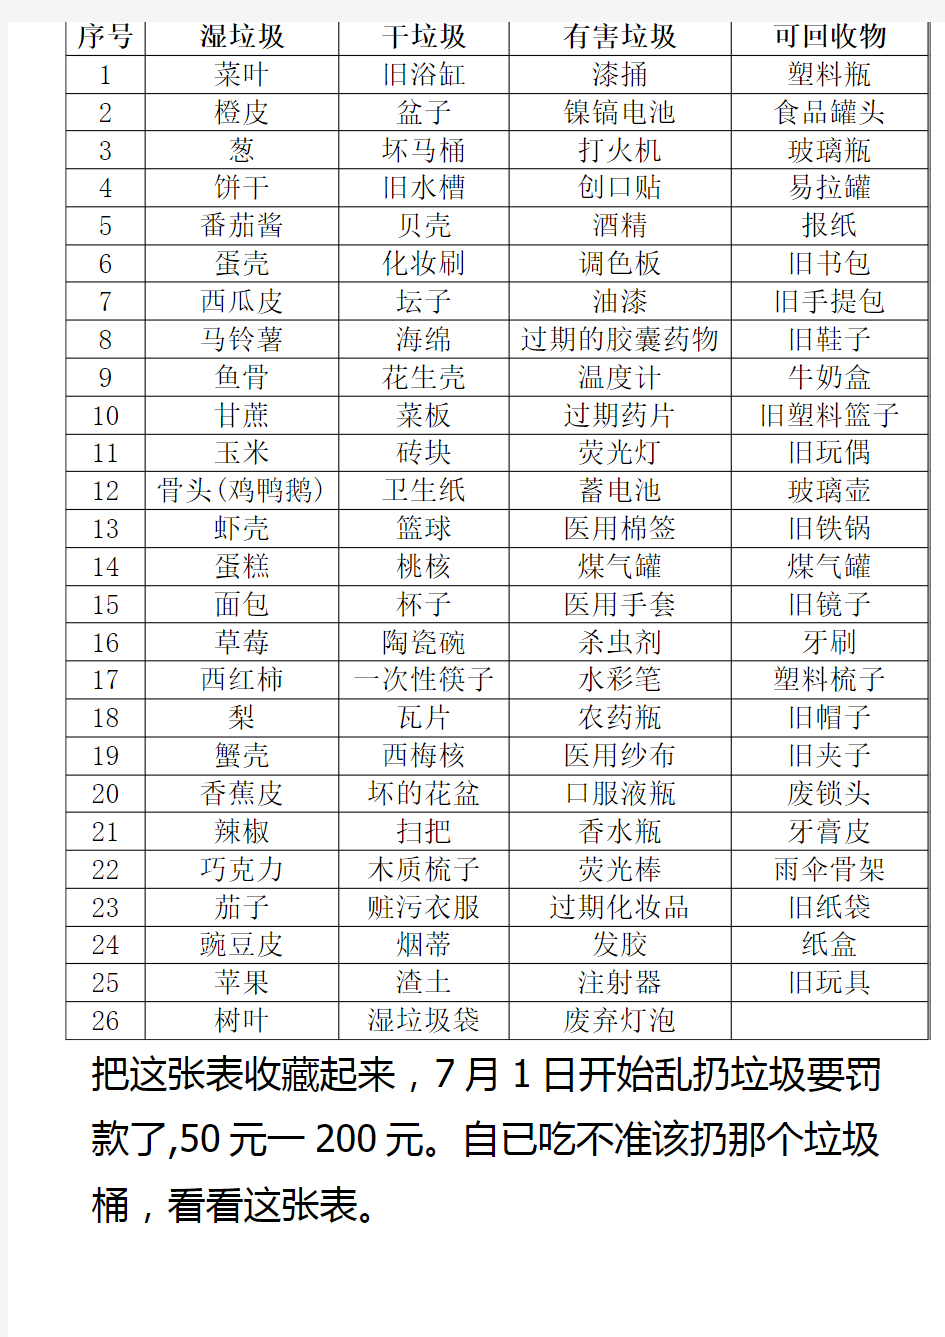 垃圾分类表(北京)2020年7月1日开始实行